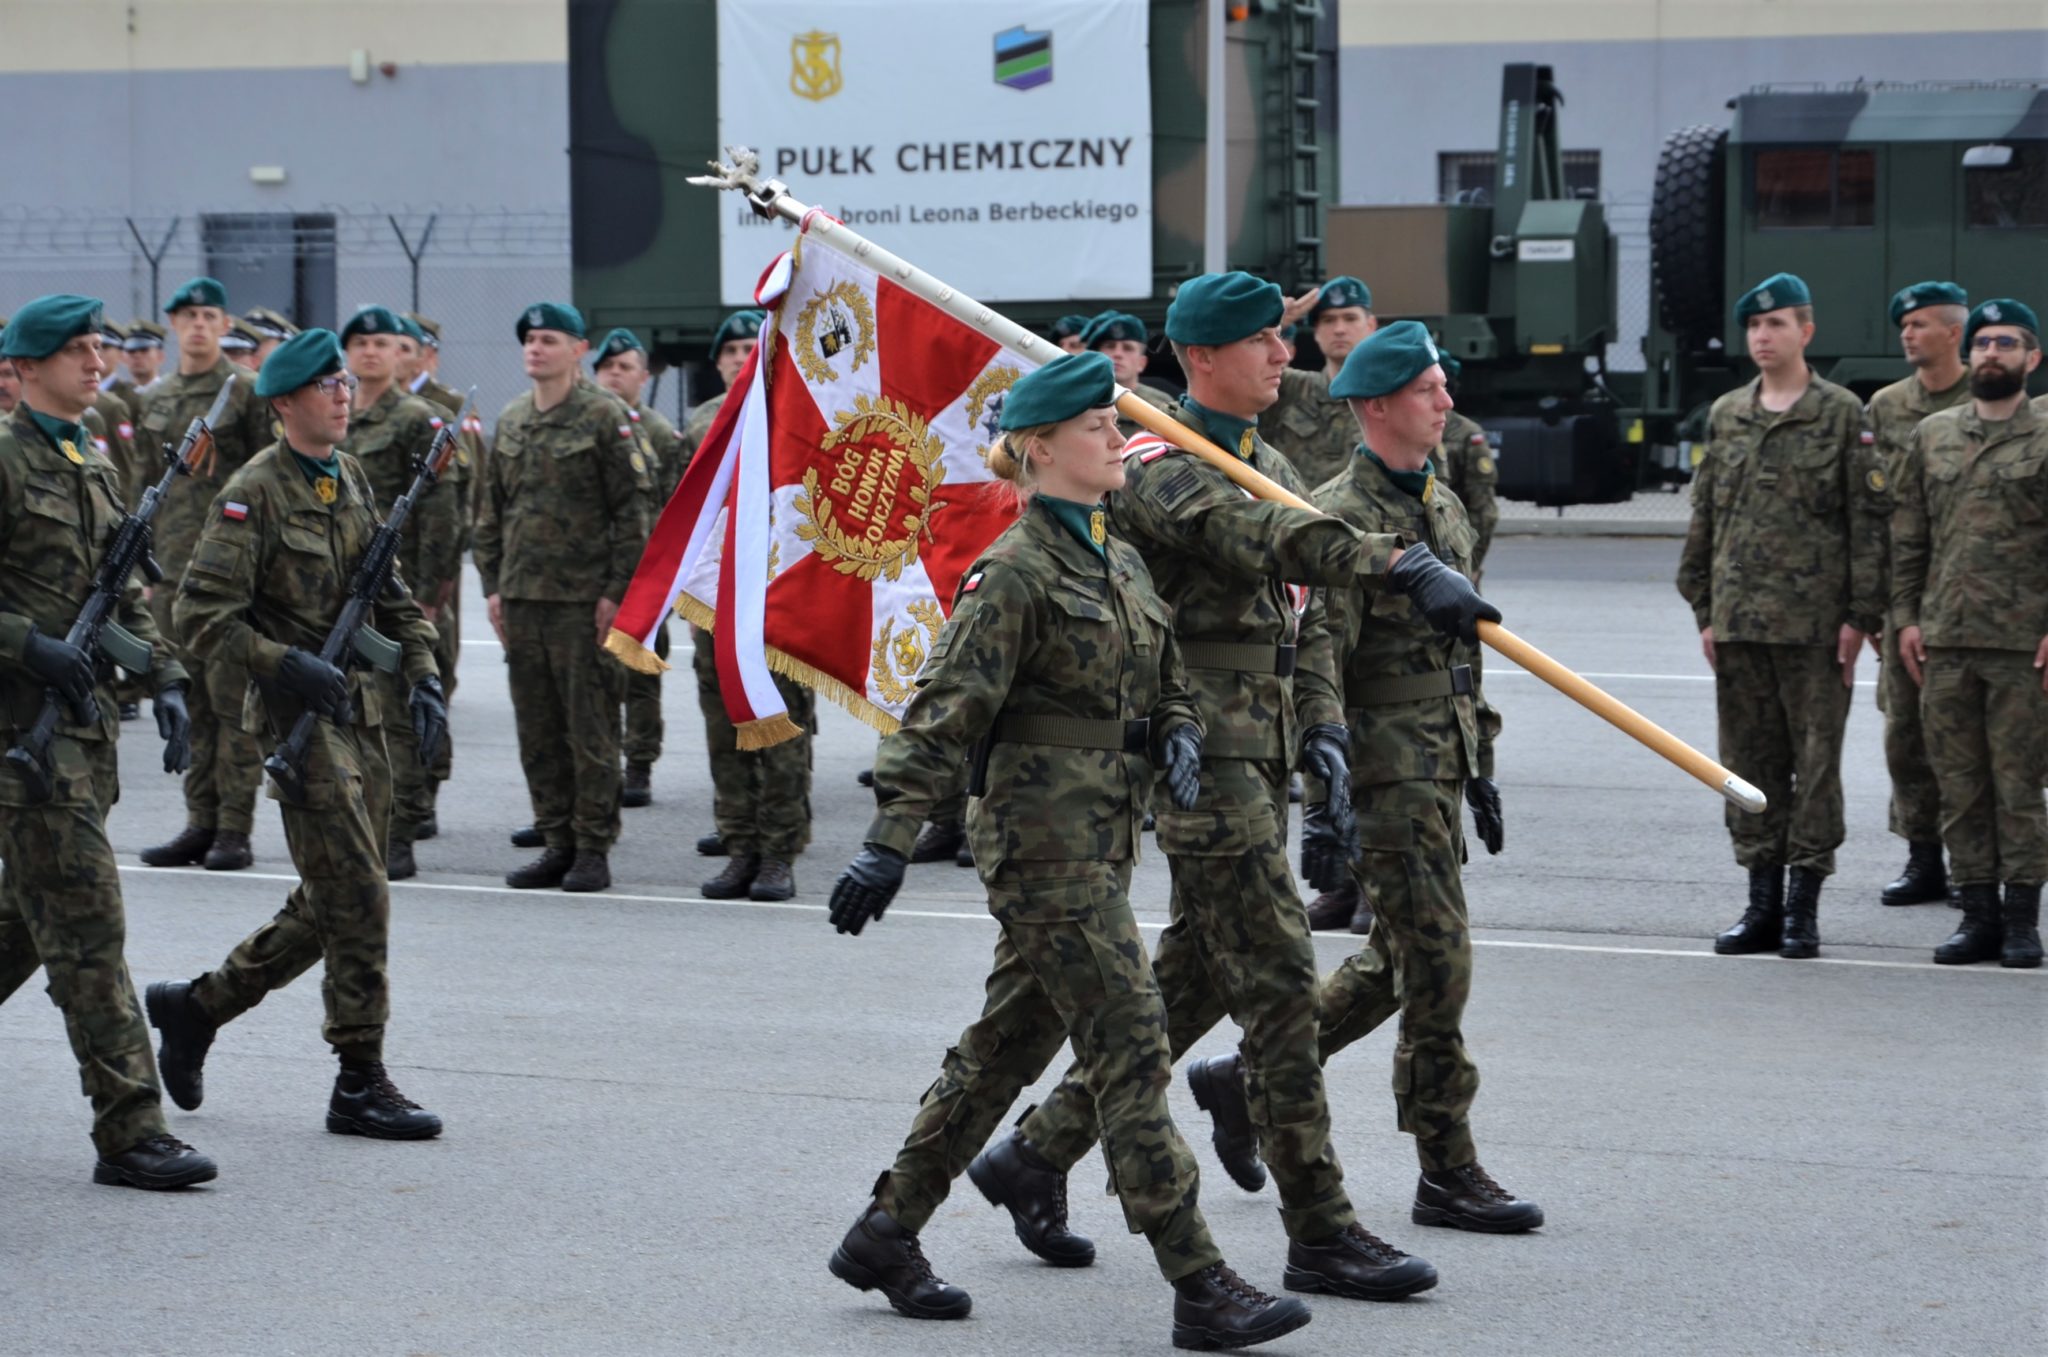 grupa żołnierzy, na pierwszym planie żołnierze niosący sztandar